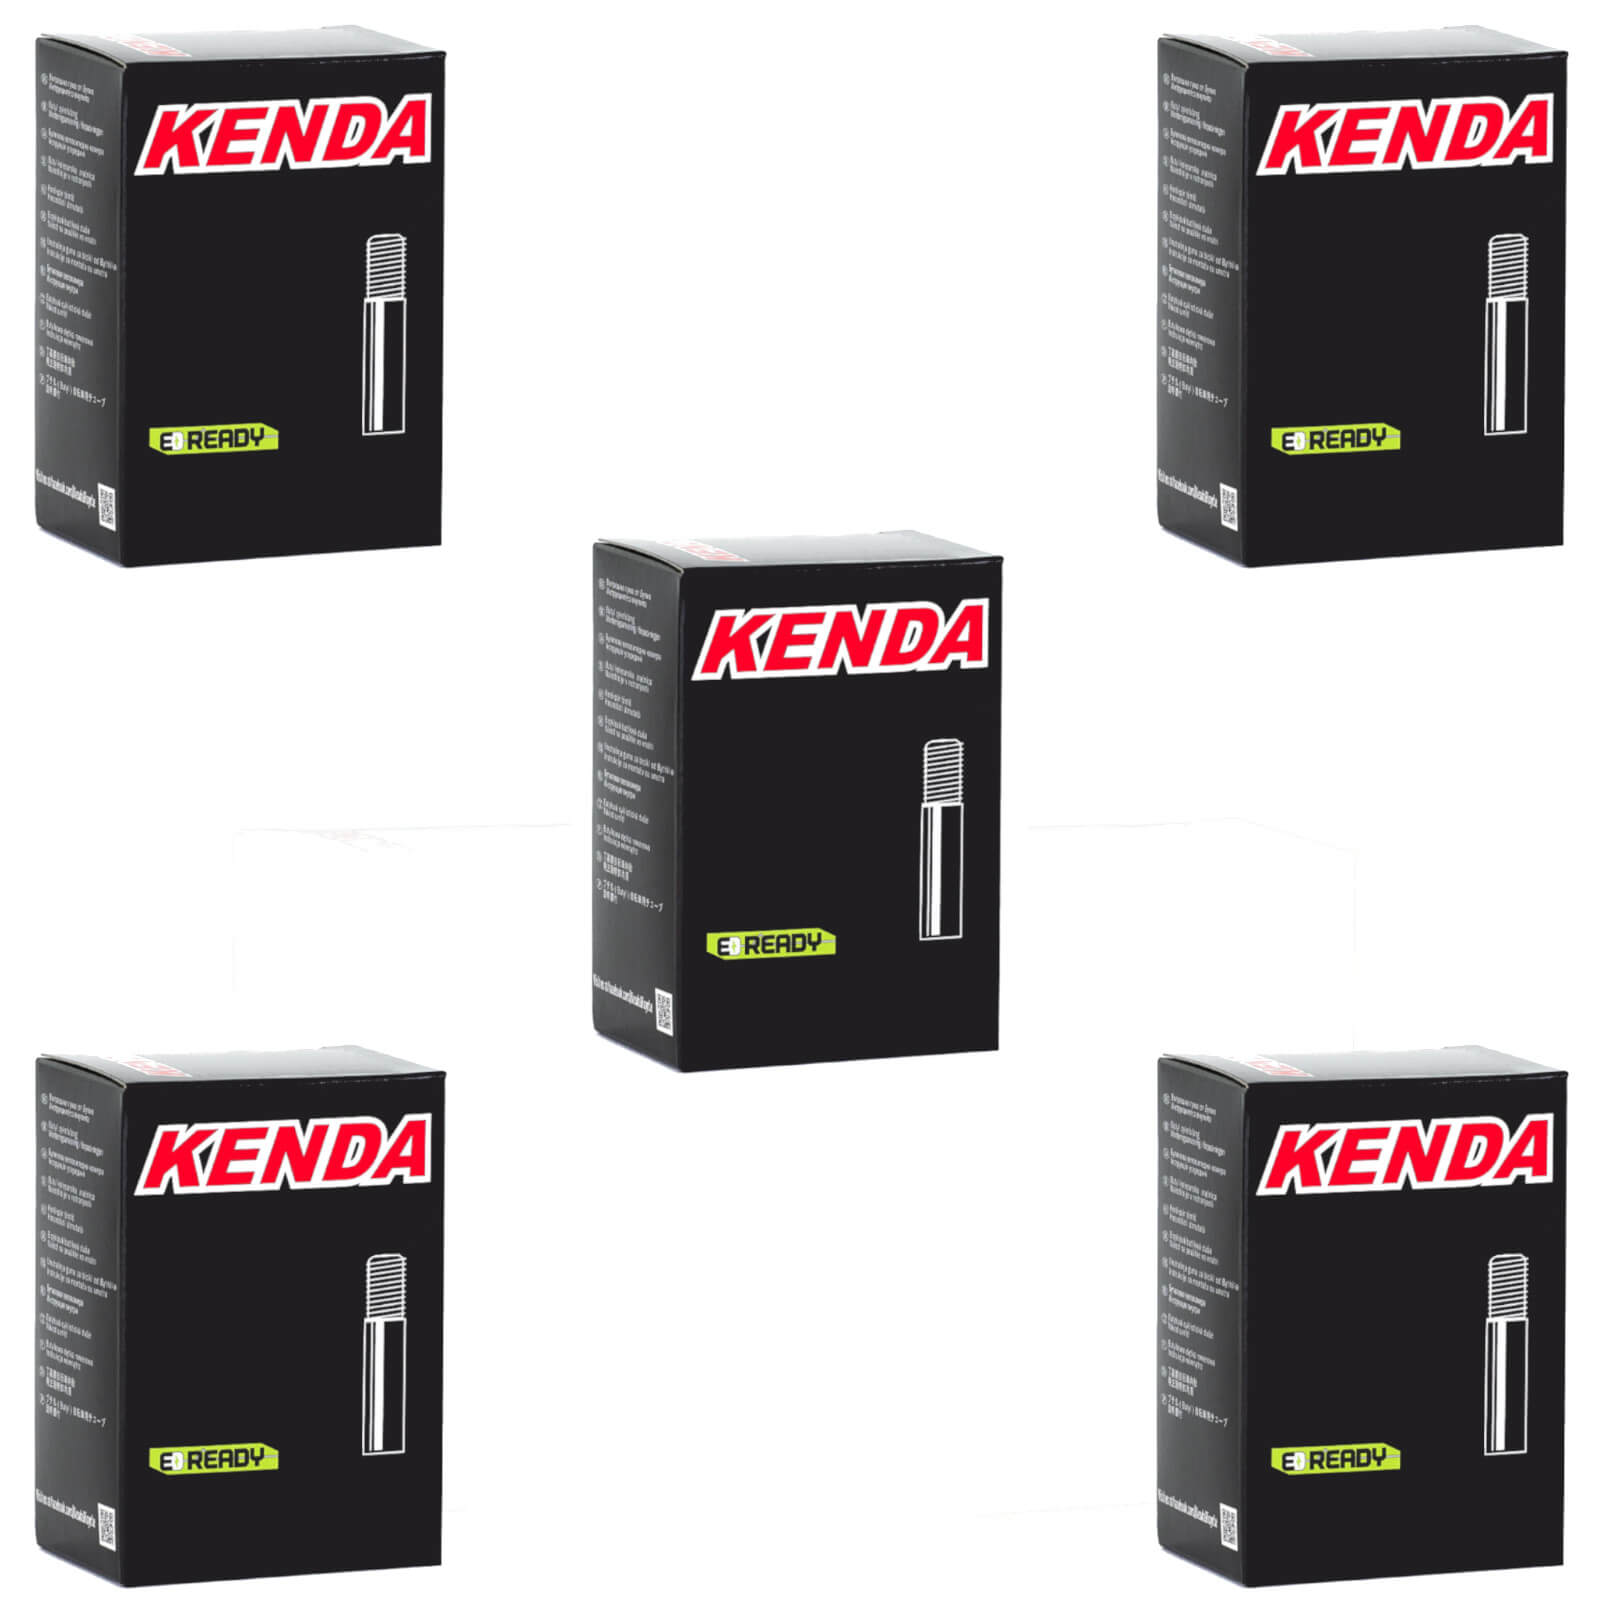 Kenda 29x2.4-2.8" 29 Inch Schrader Valve Bike Inner Tube Pack of 5